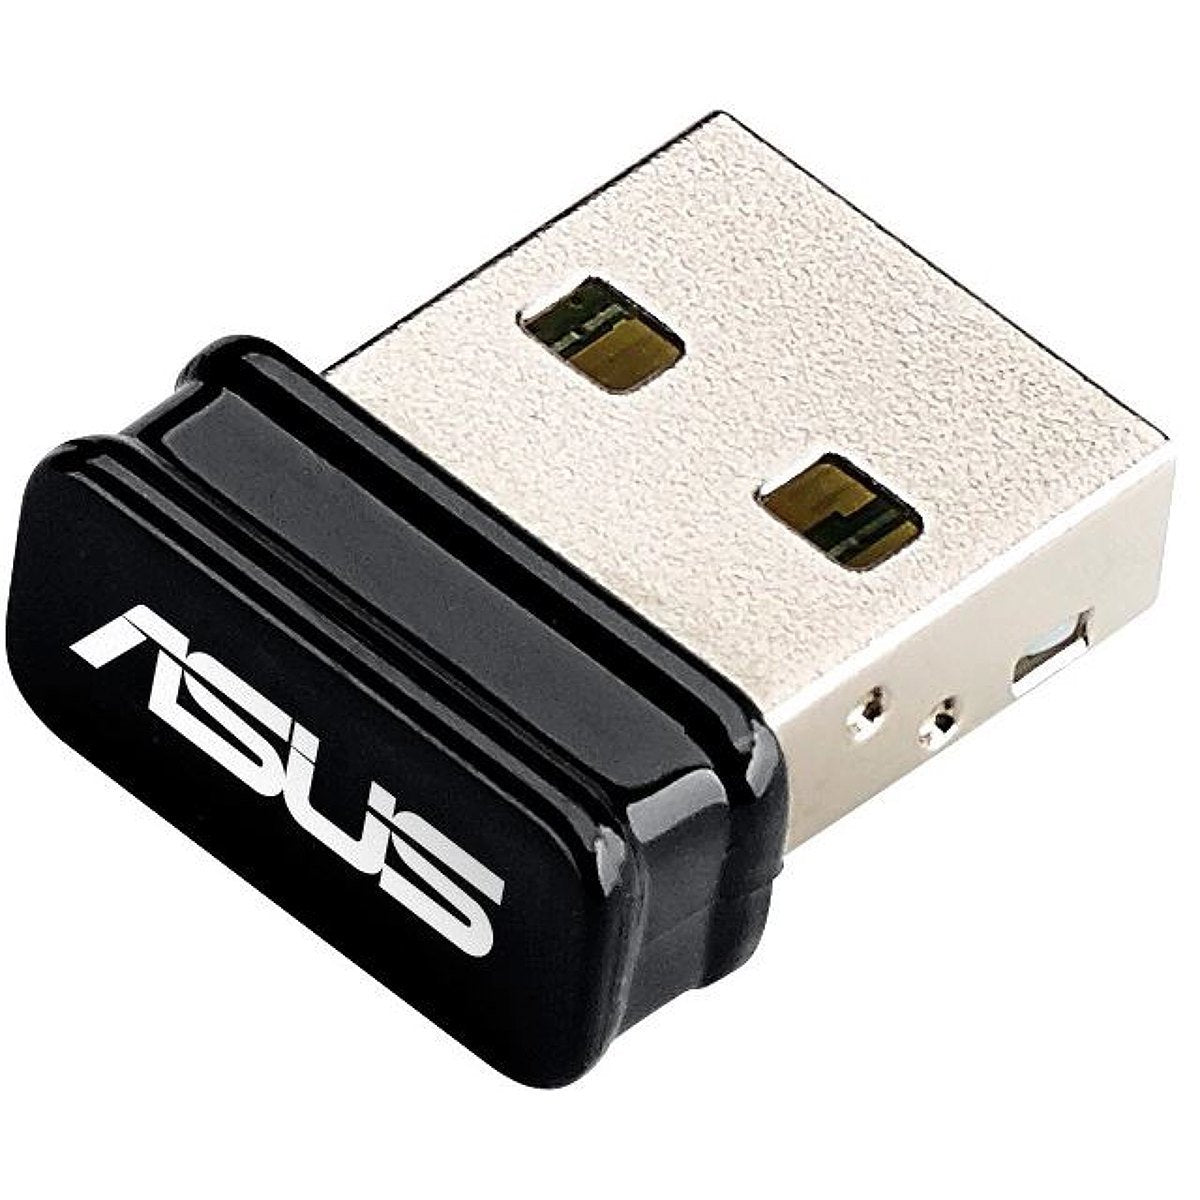 Asus USB-N10 NANO (150Mb/s) Wireless-N150 USB Adaptor - Store 974 | ستور ٩٧٤